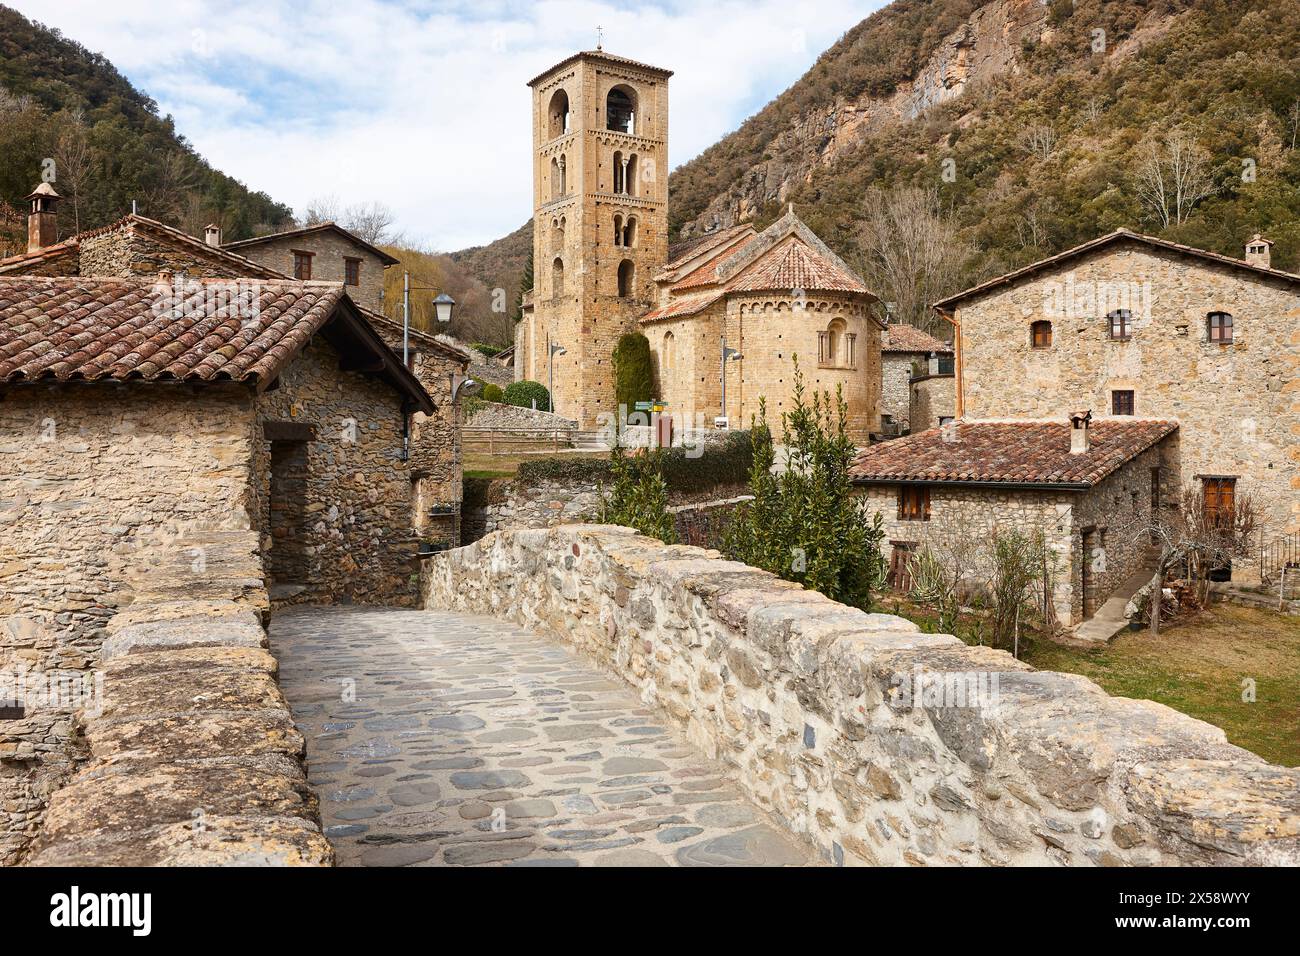 Traditionelles mittelalterliches Dorf mit romanischer Kirche in Girona, Katalonien. Spanien Stockfoto